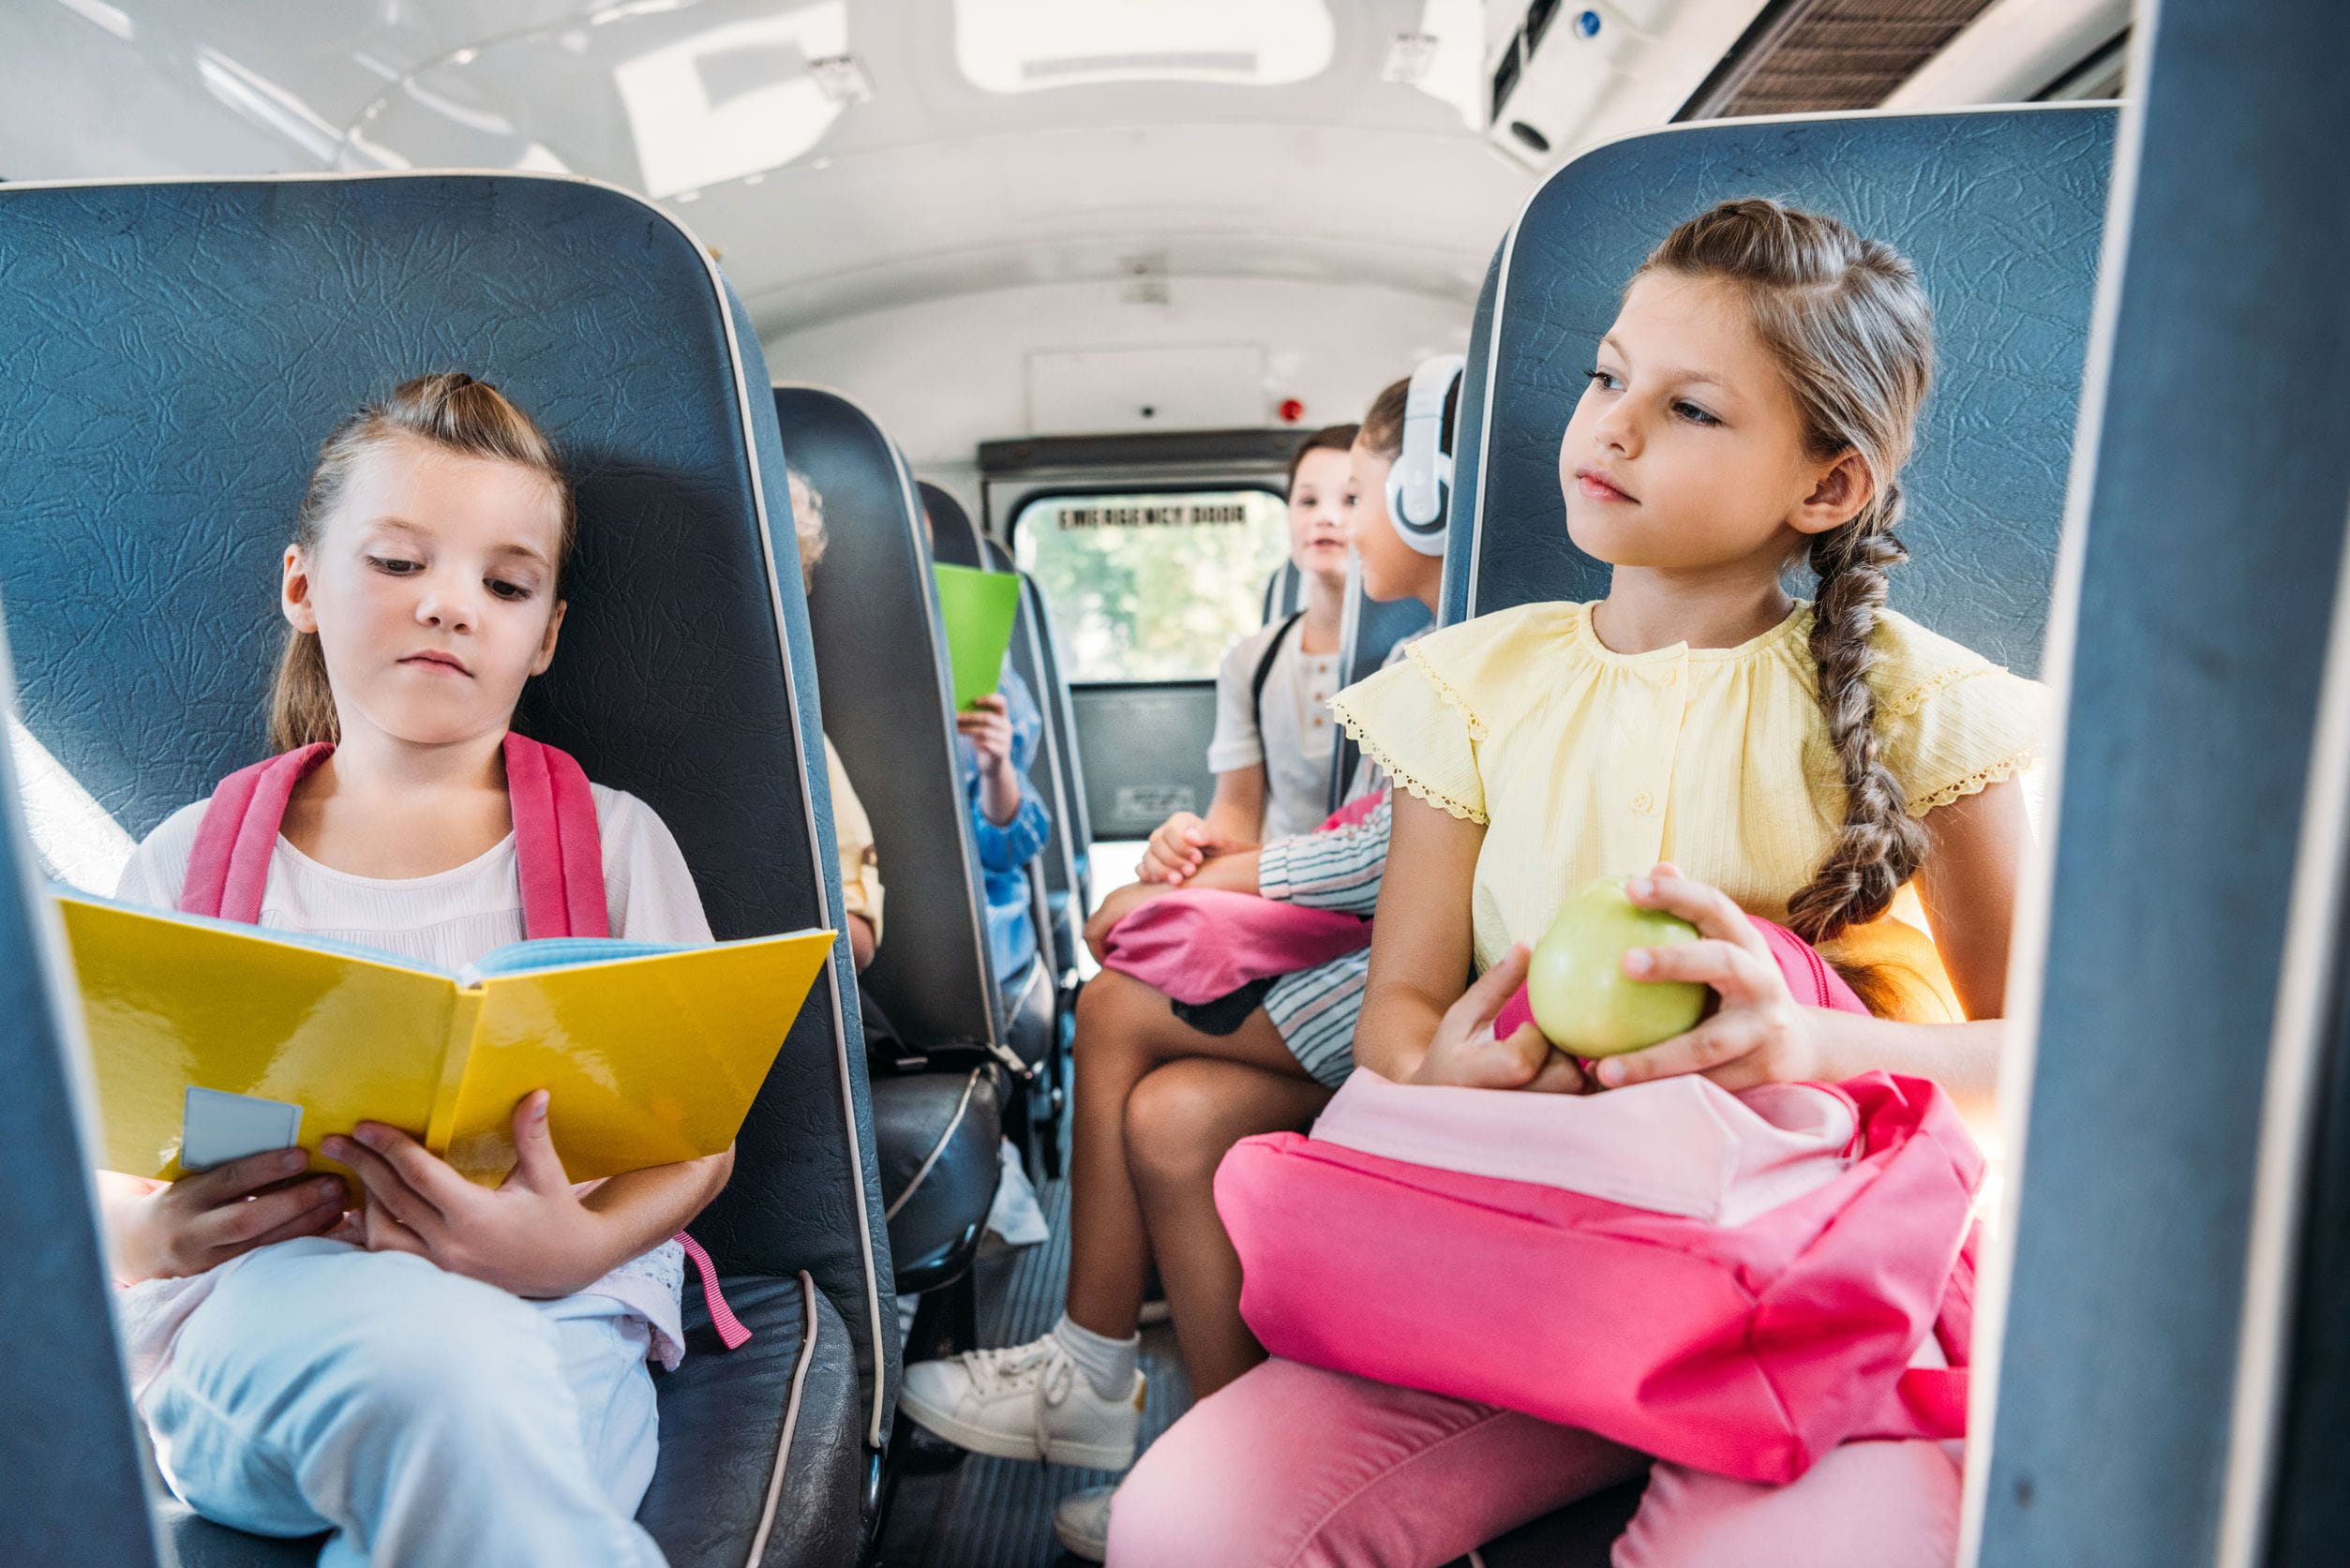 Экскурсионный автобус для детей. Автобус для детей. Общественный транспорт для детей. Детский экскурсионный автобус. Дети в автобусе на экскурсии.